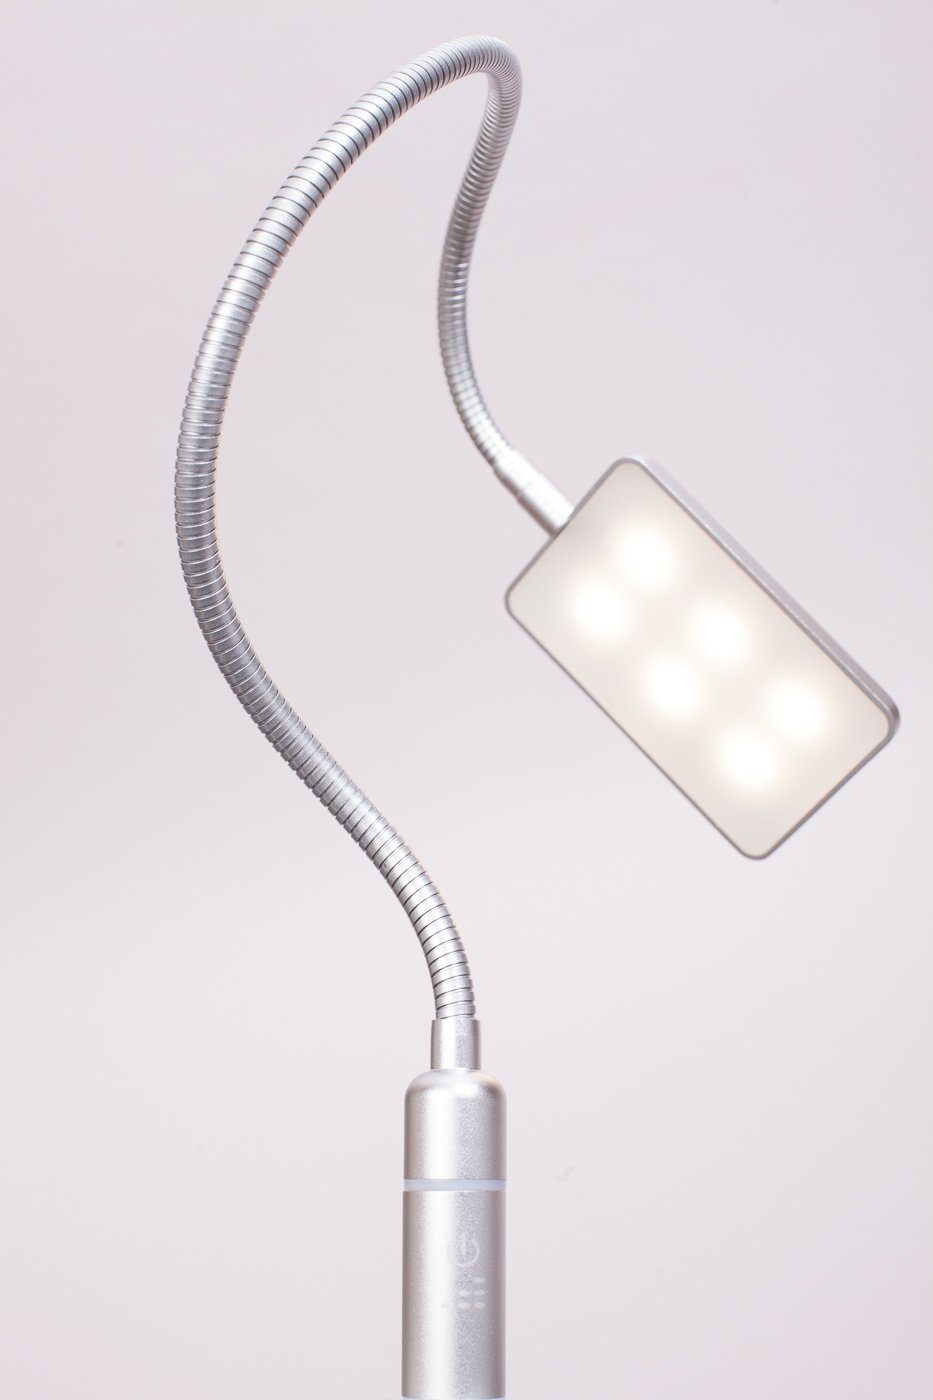 kalb Bettleuchte 4W LED Bettleuchte Leseleuchte Nachttischlampe Leselampe flexibel, 1er Set silbergrau, warmweiß